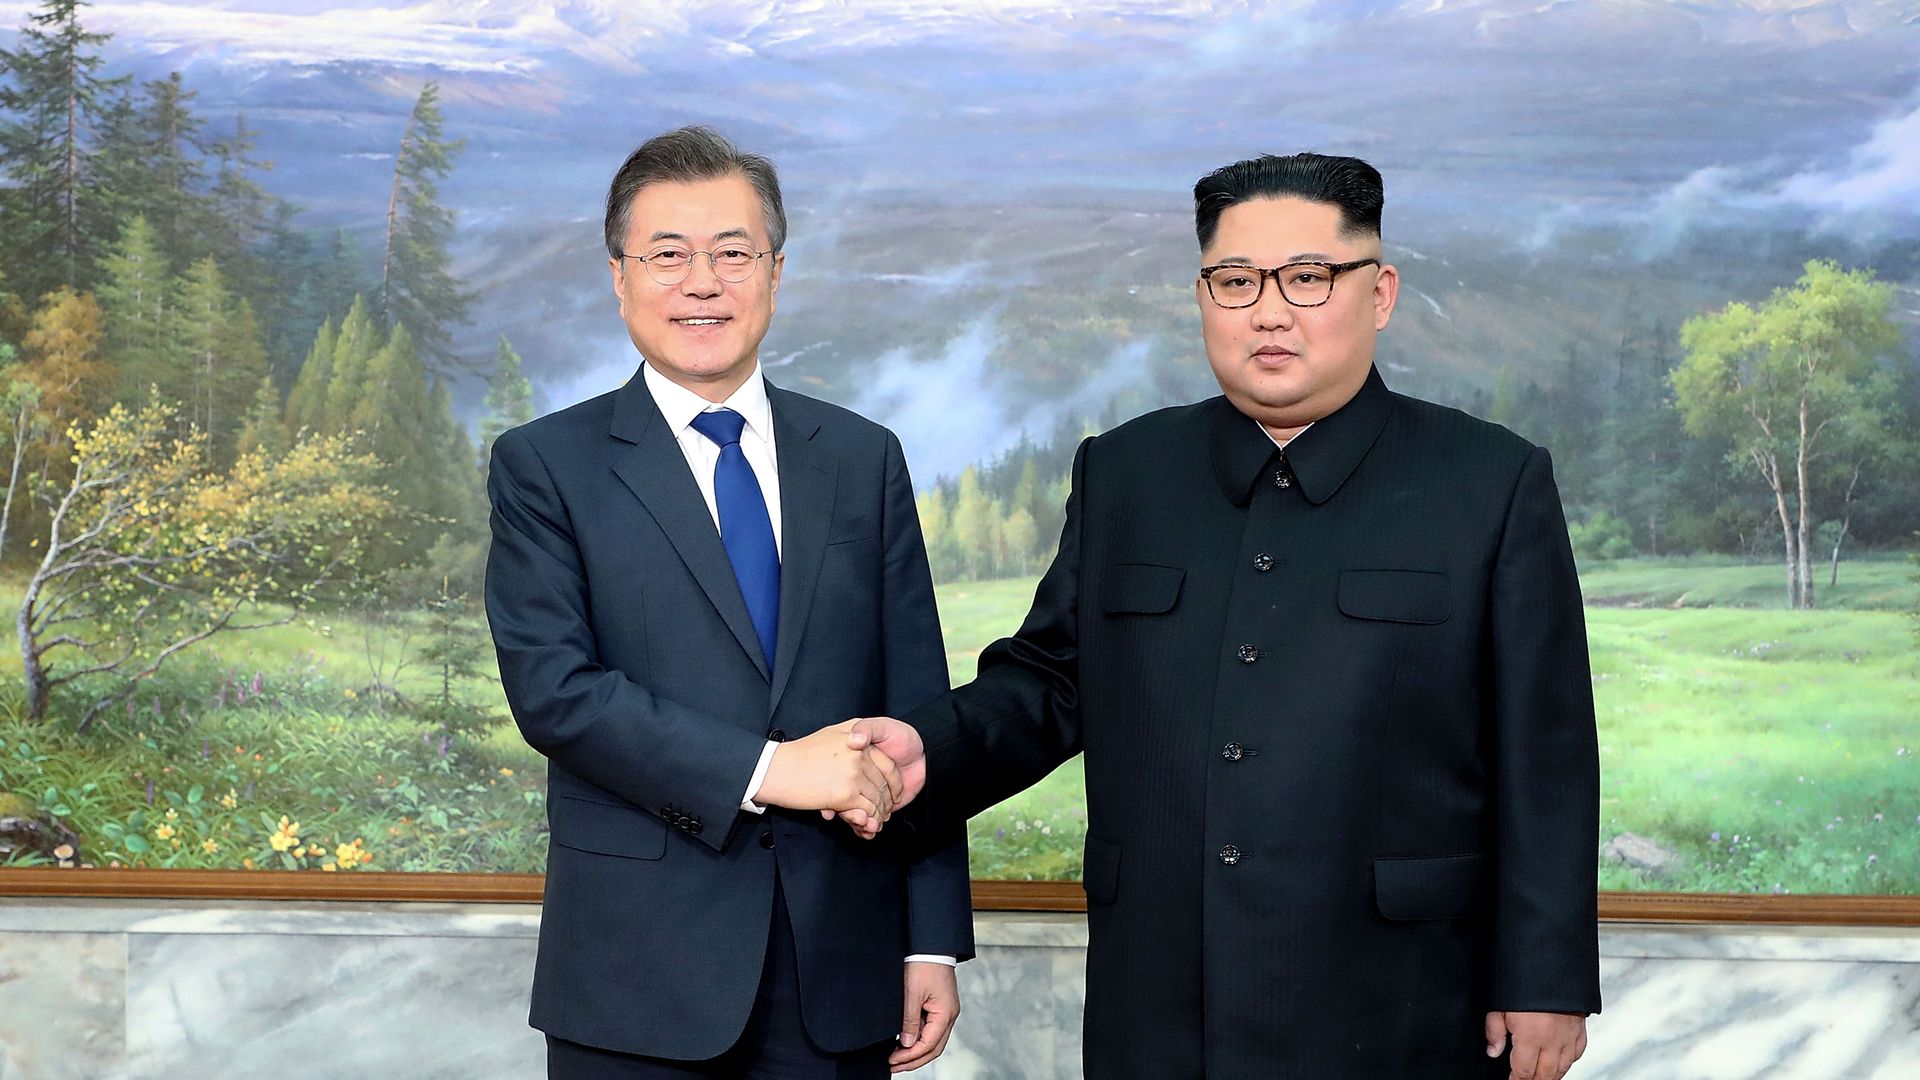 Moon Jae-in shaking hands with Kim Jong Un